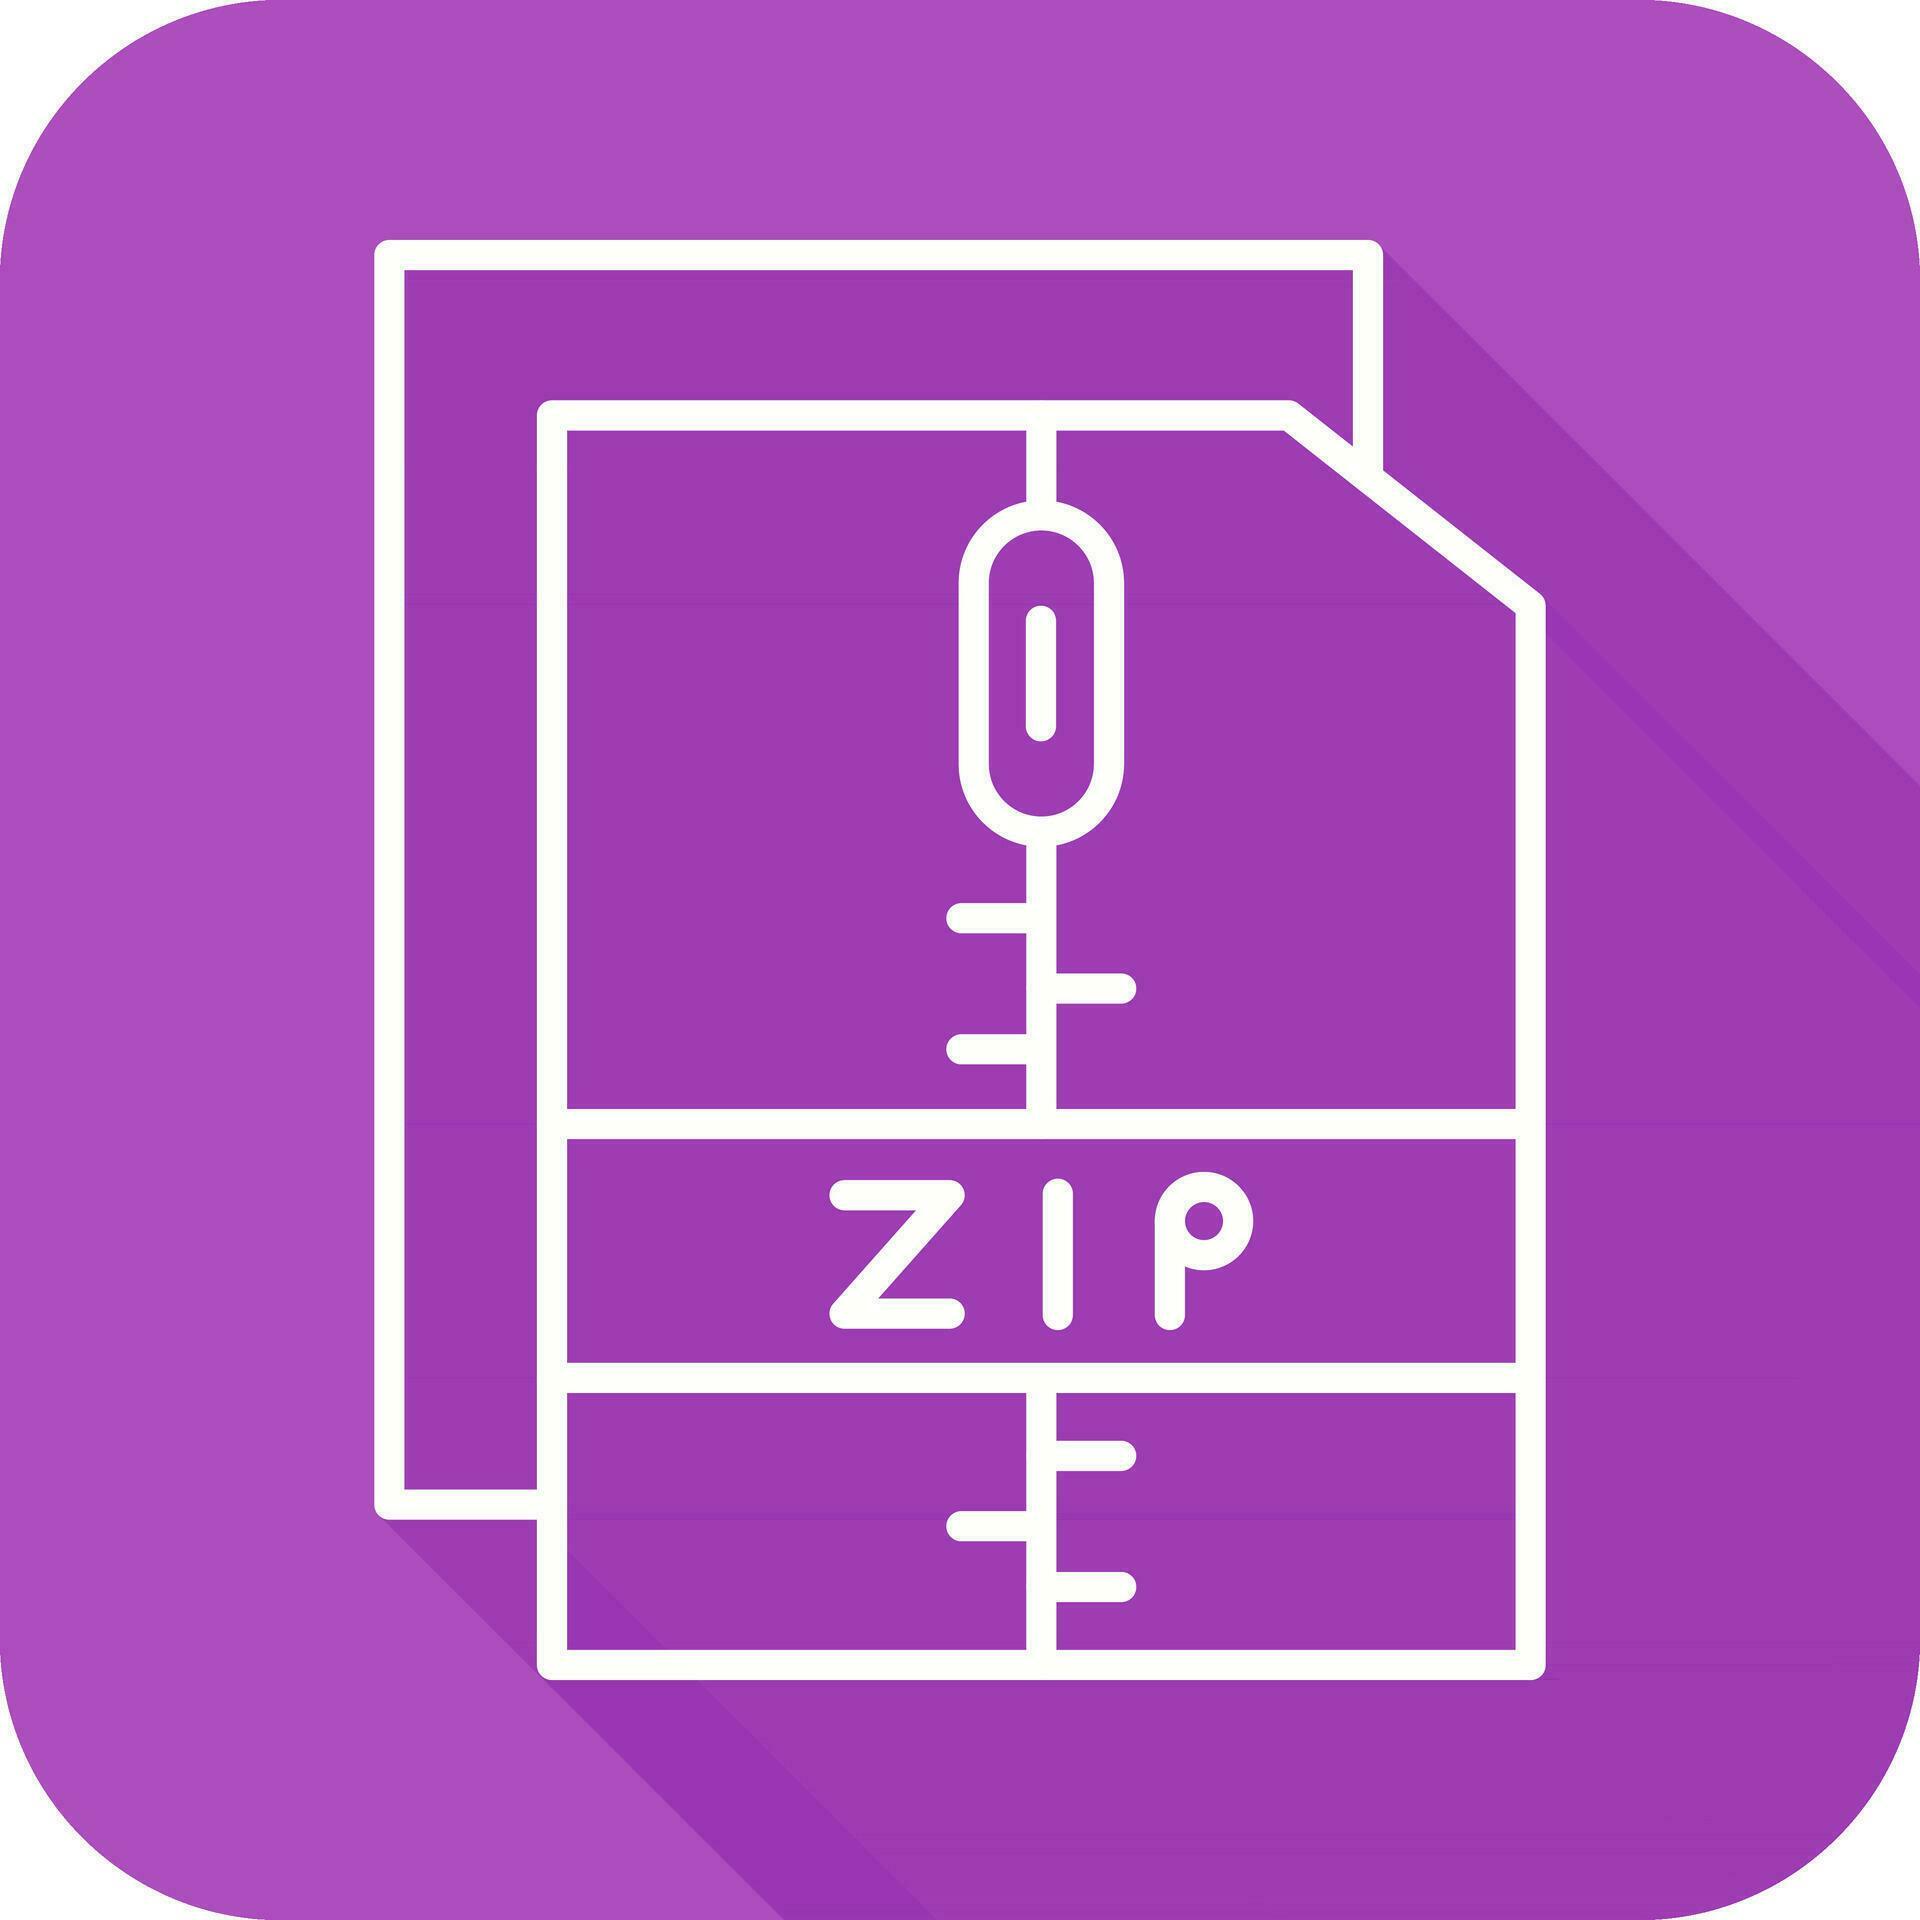 Zip File Vector Icon 24915073 Vector Art at Vecteezy